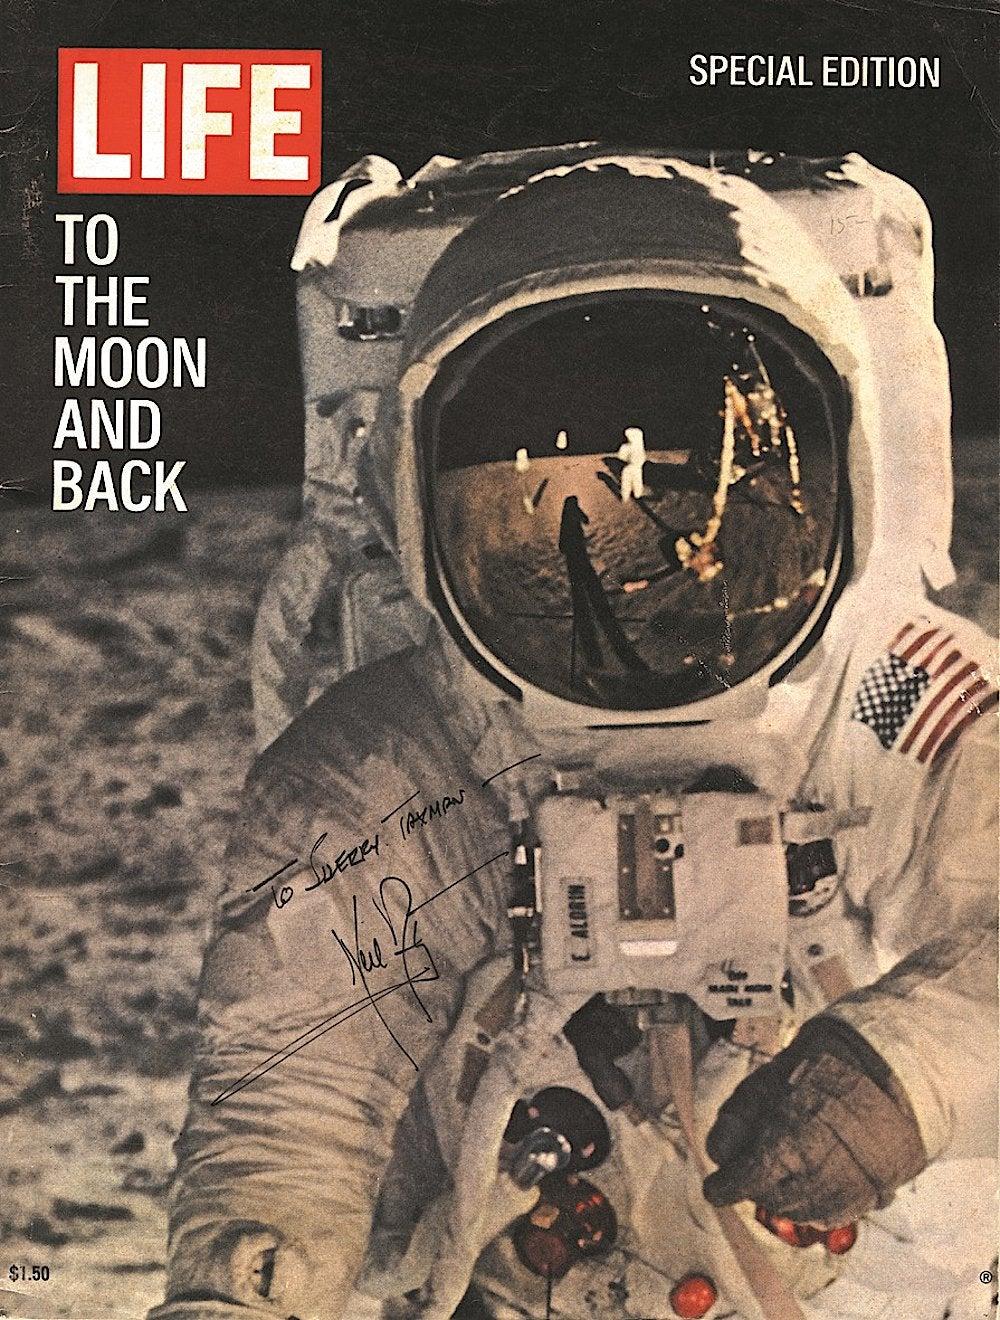 1960s life magazine